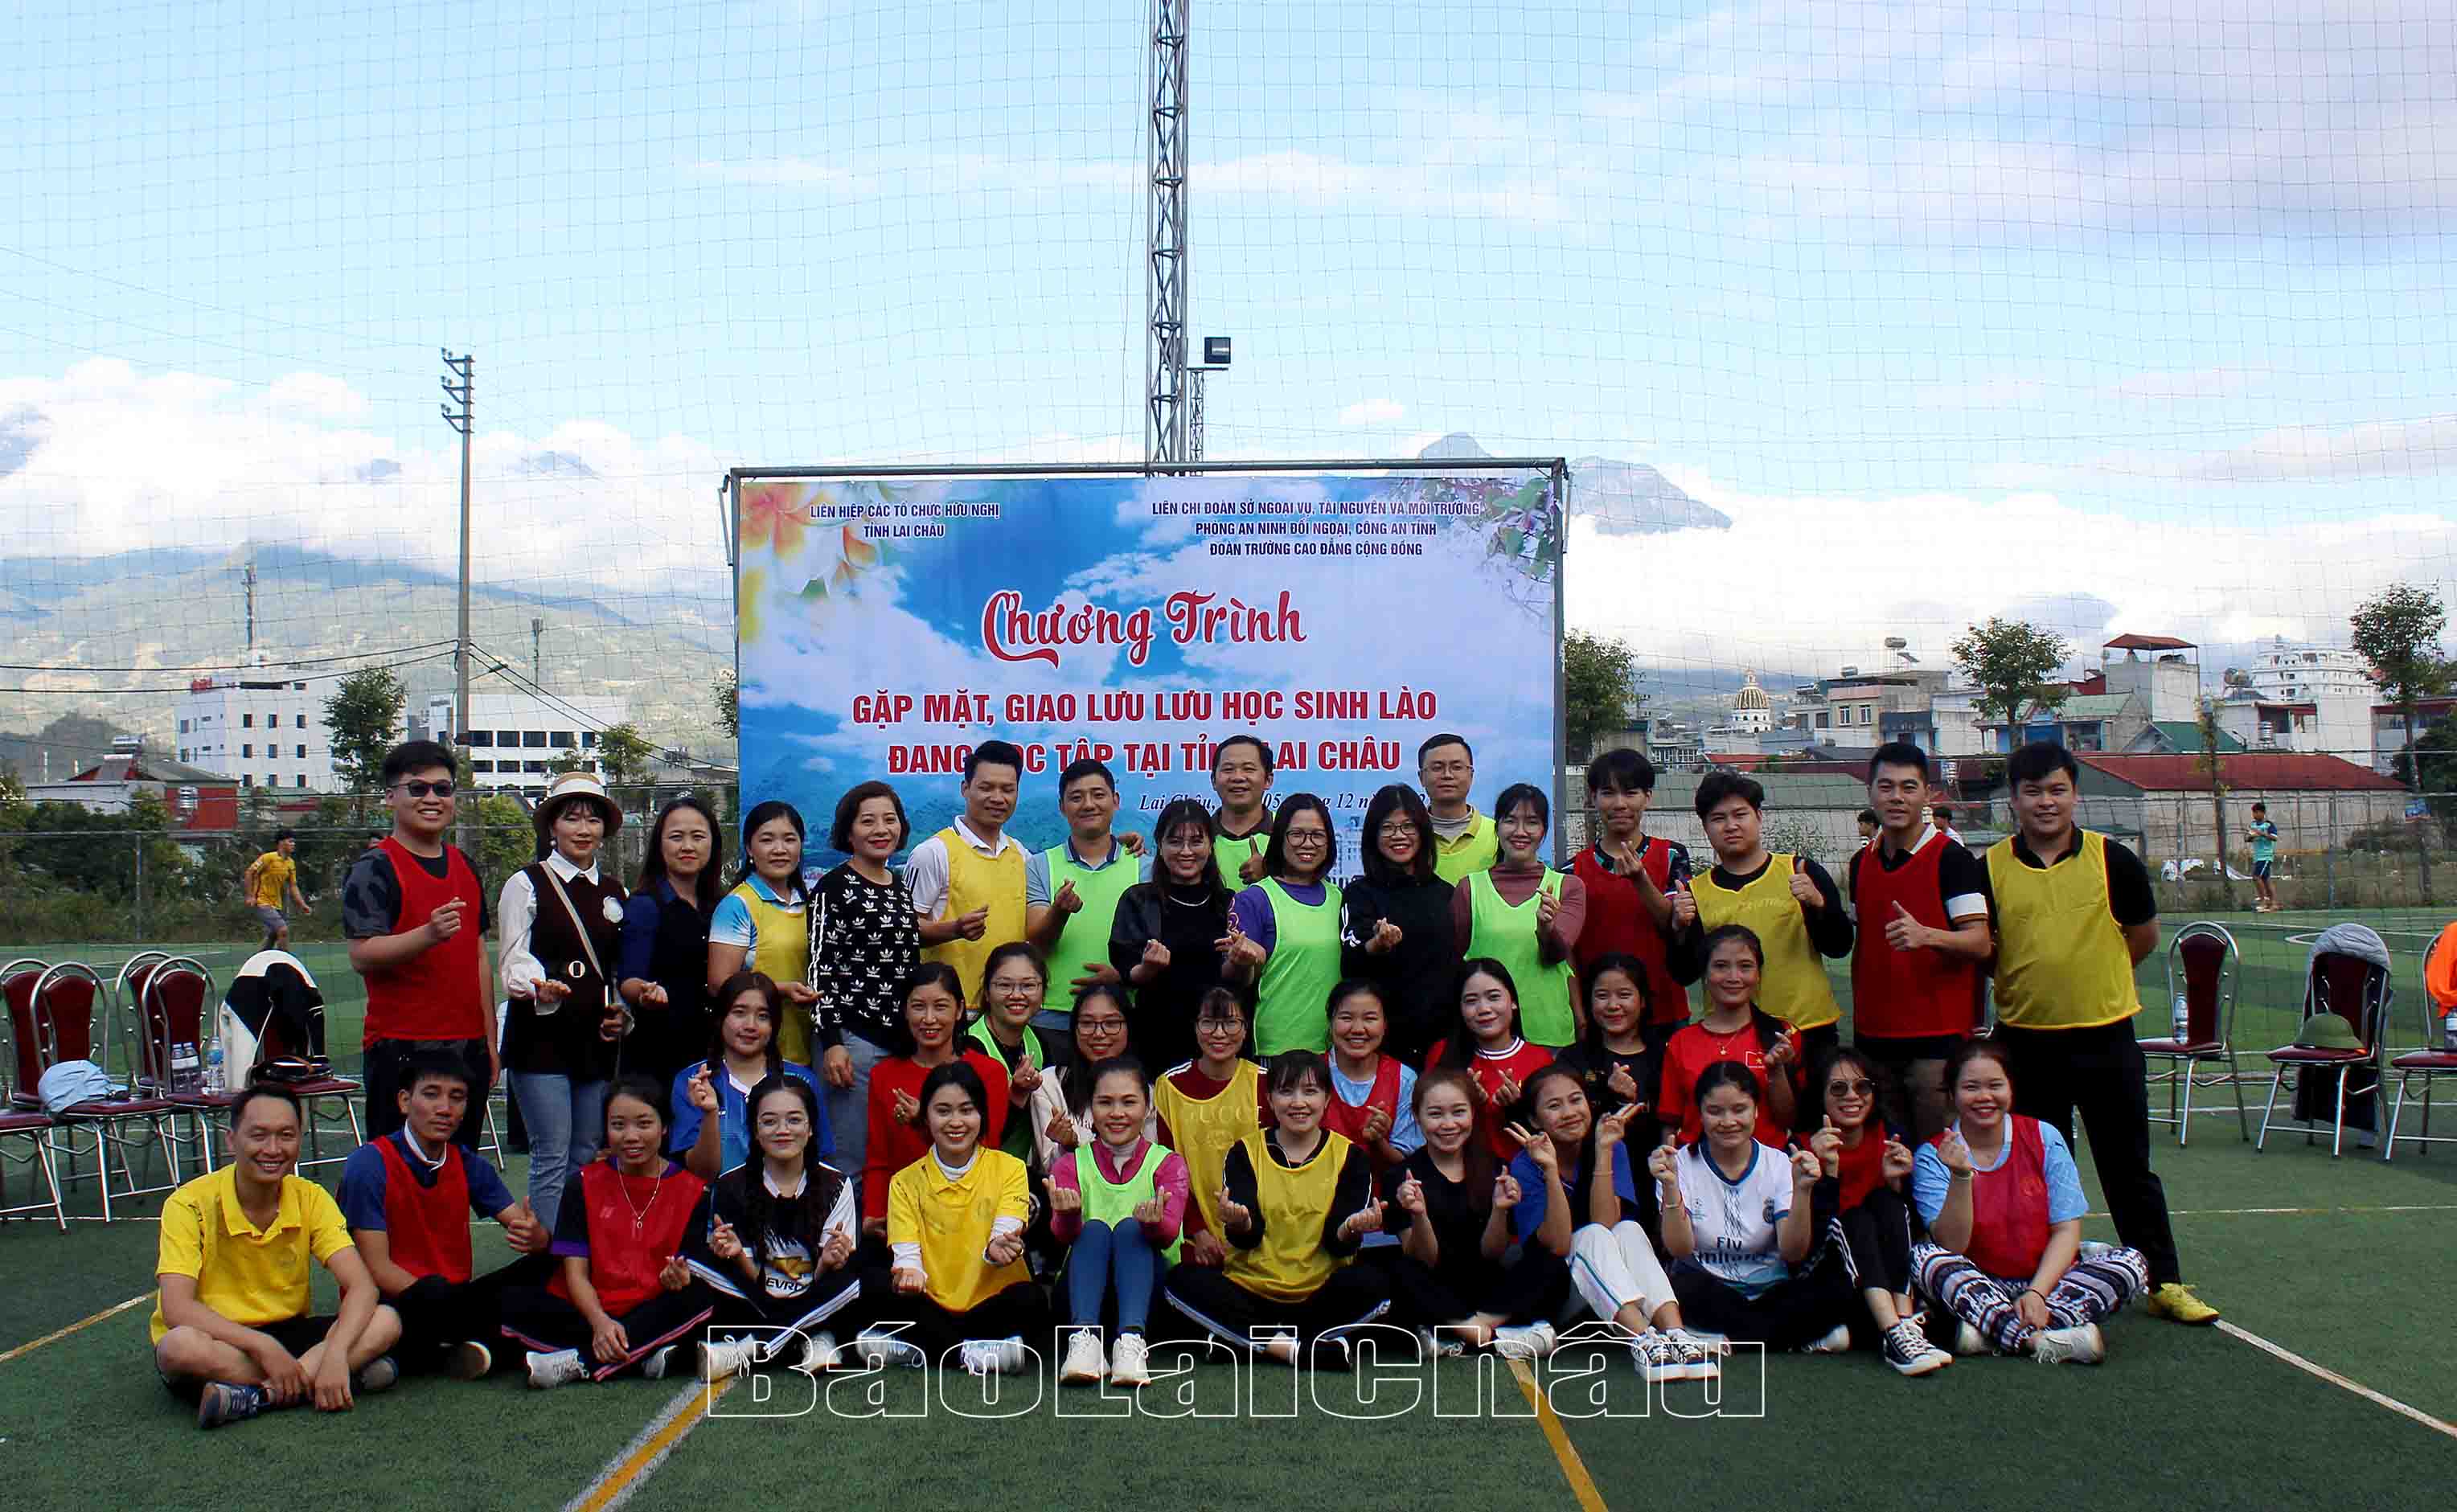 Lưu học sinh Lào cùng đoàn viên các Liên Chi đoàn chụp ảnh lưu niệm.